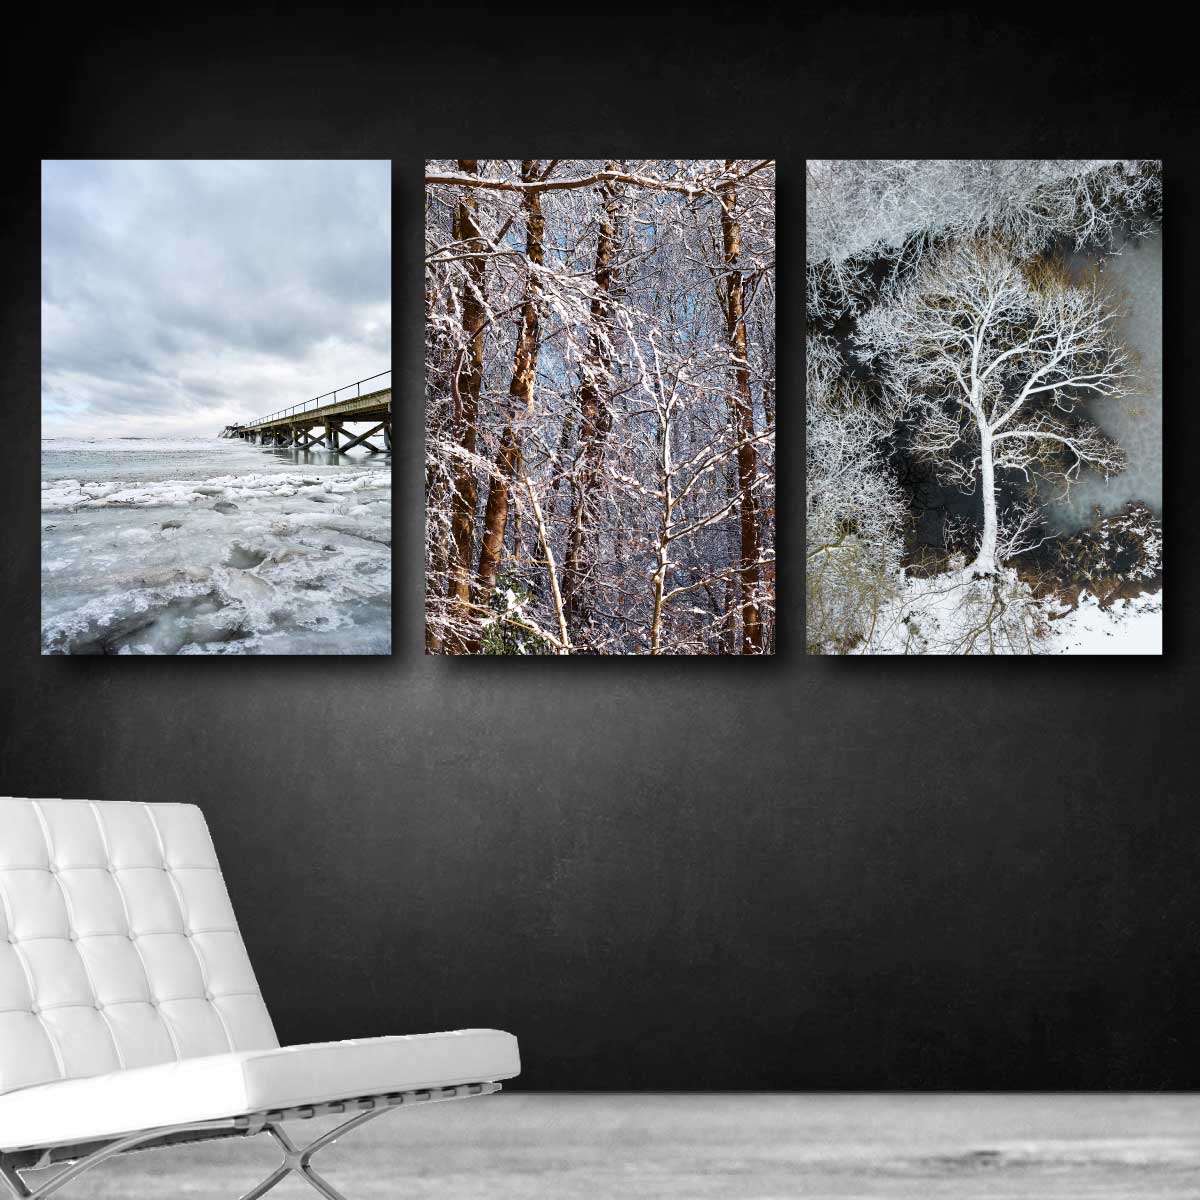 væg med billeder med vintermotiver fra Danmark